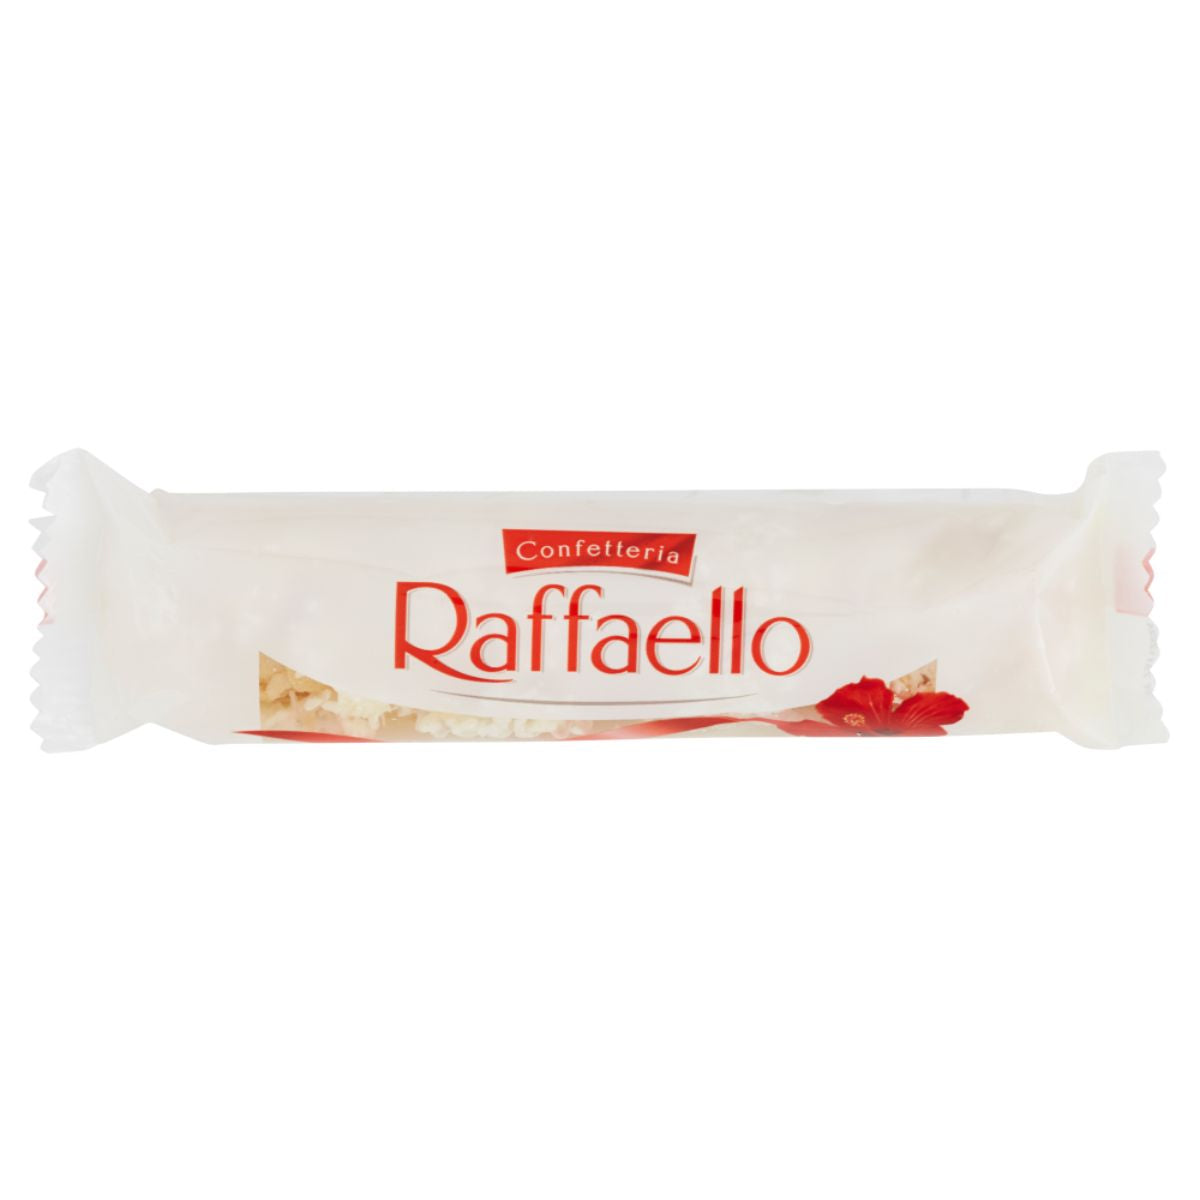 A Confetteria - Raffaello - 40g on a white background.